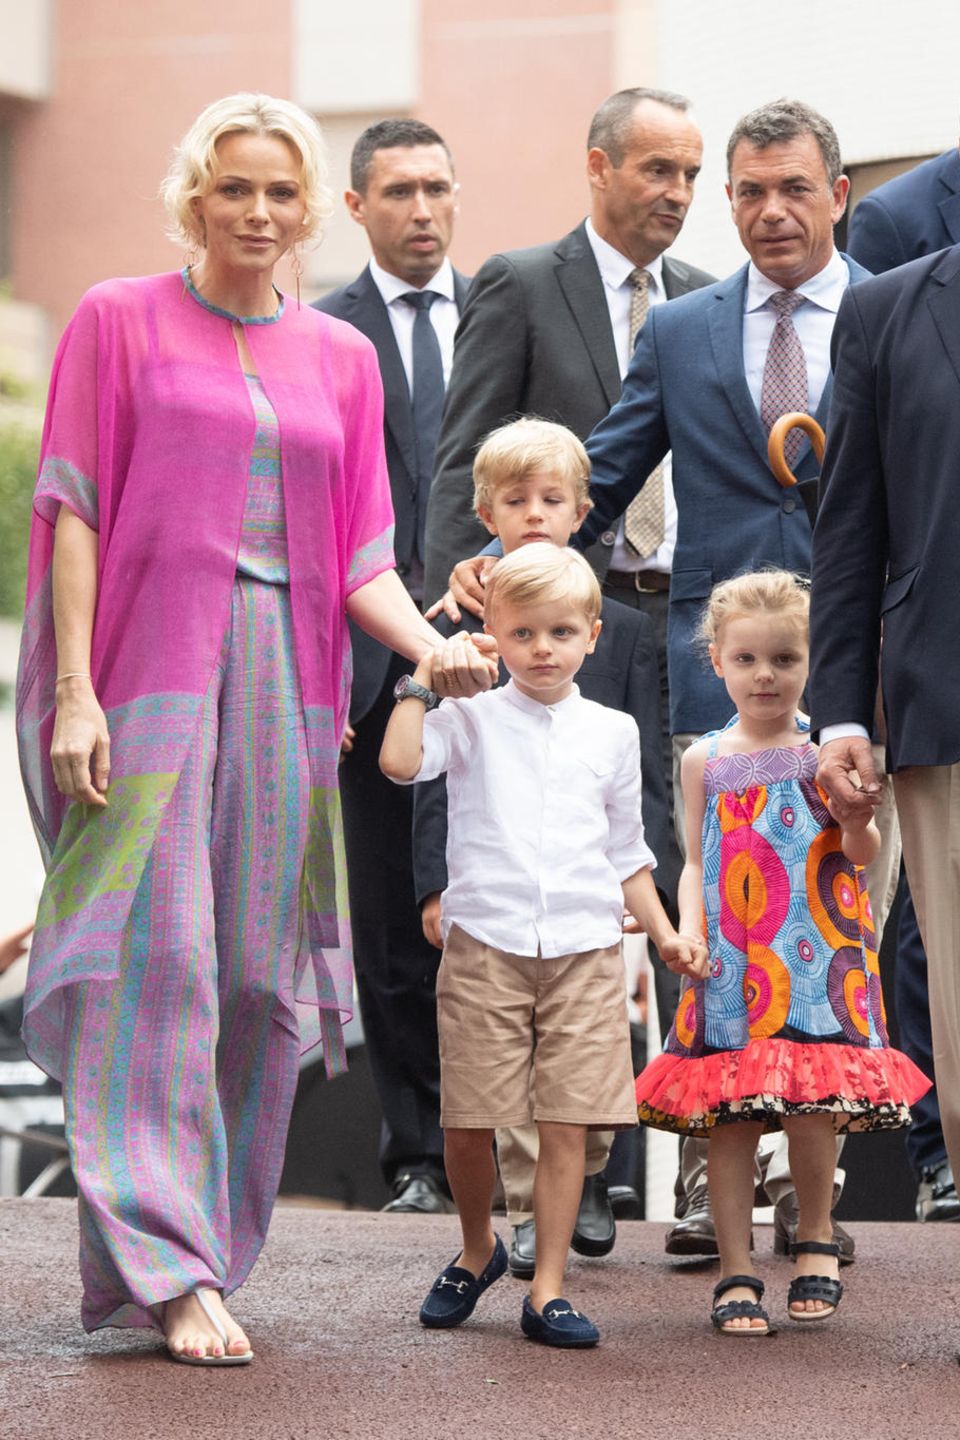 Zum traditionellen monegassischen Sommerpicknick erscheinen Fürstin Charlène und Fürst Albert mit den Zwillingen, die ganz schön groß geworden sind! An den Händen von Mama und Papa schauen sie etwas schüchtern. Fürstin Charlène hingegen zieht in ihrem farbenfrohen Outfit selbstbewusst alle Blicke auf sich. 